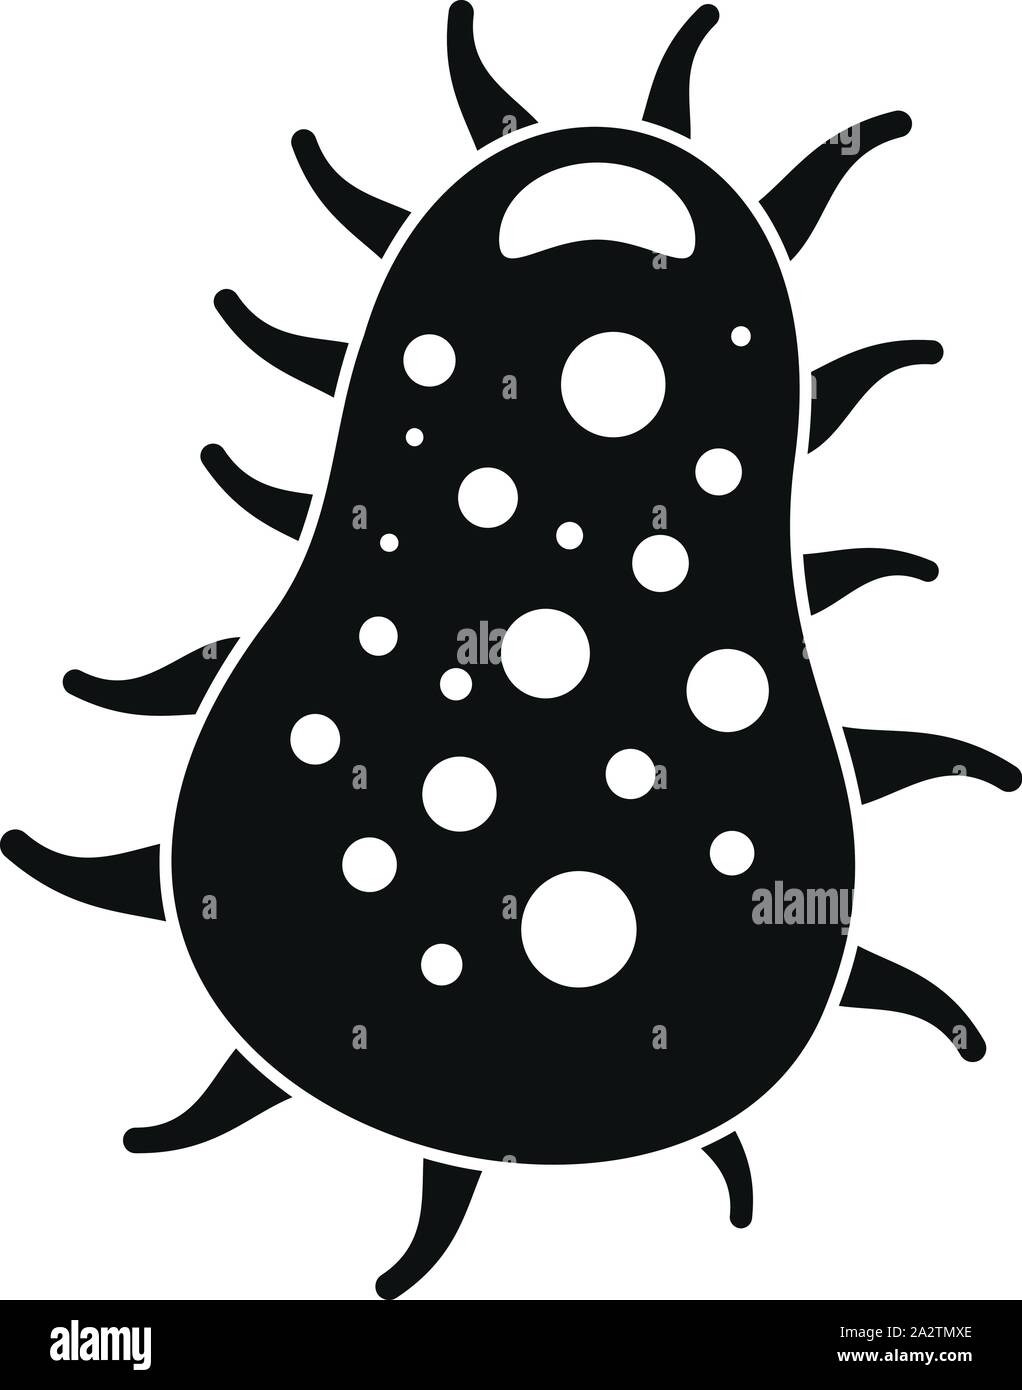 Erreger Bakterien Symbol. Einfache Abbildung von pathogenen Bakterien vektor Symbol für Web Design auf weißem Hintergrund Stock Vektor